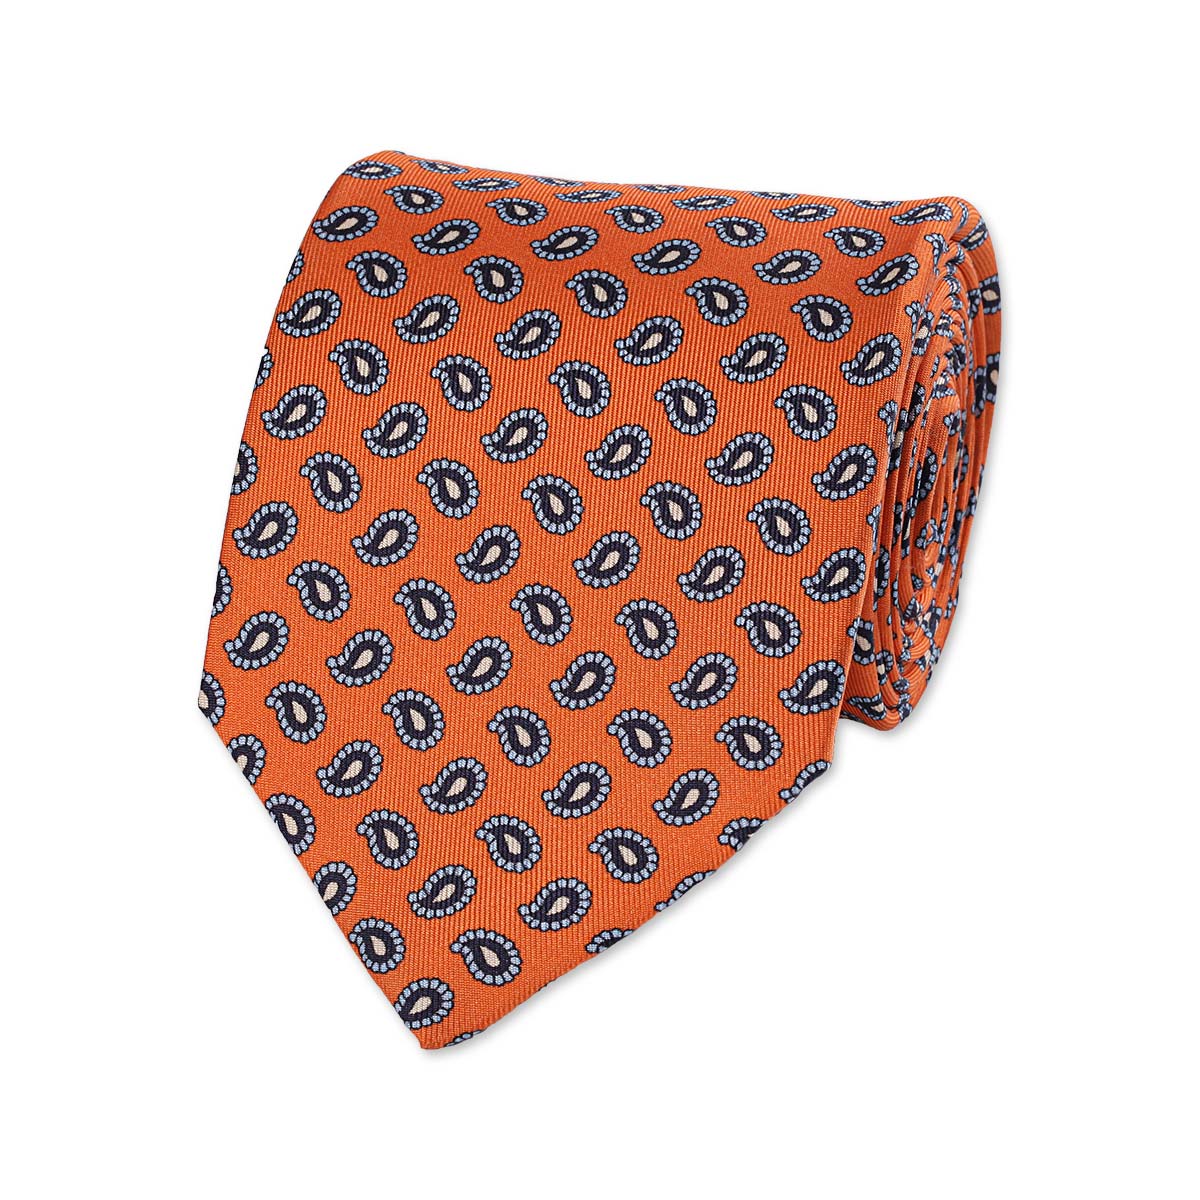  Cravate Tie TigerTie Designer Soie Cravate orange saumon Royal Gris à carreaux  